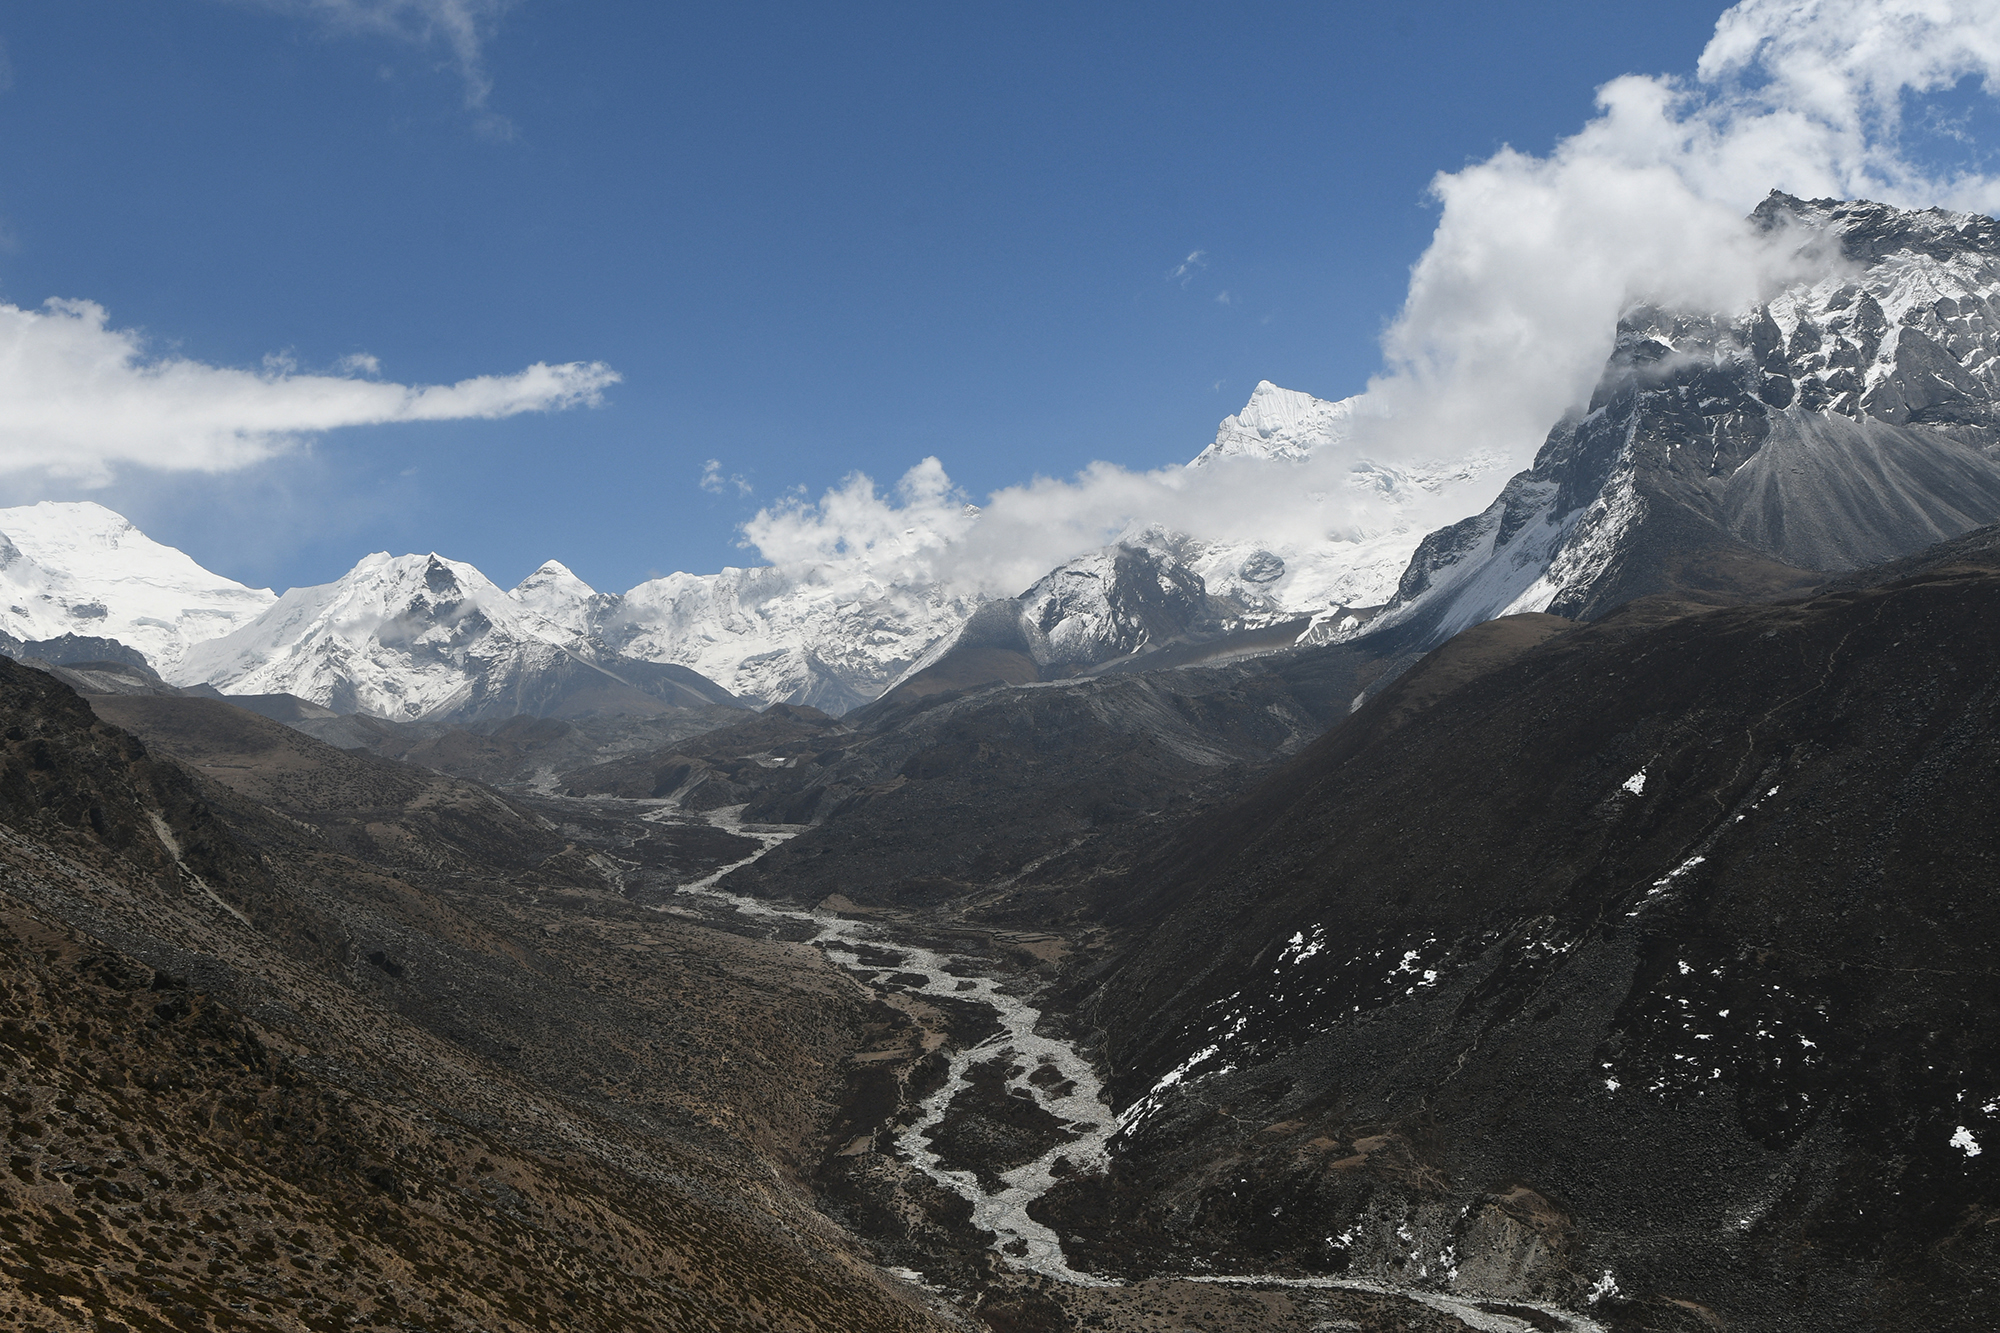 Des centaines d’alpinistes affluent au printemps au Népal, qui abrite huit des 14 plus hauts sommets du monde, pour gravir ces sommets quand les températures sont clémentes. AFP/Prakash Mathema